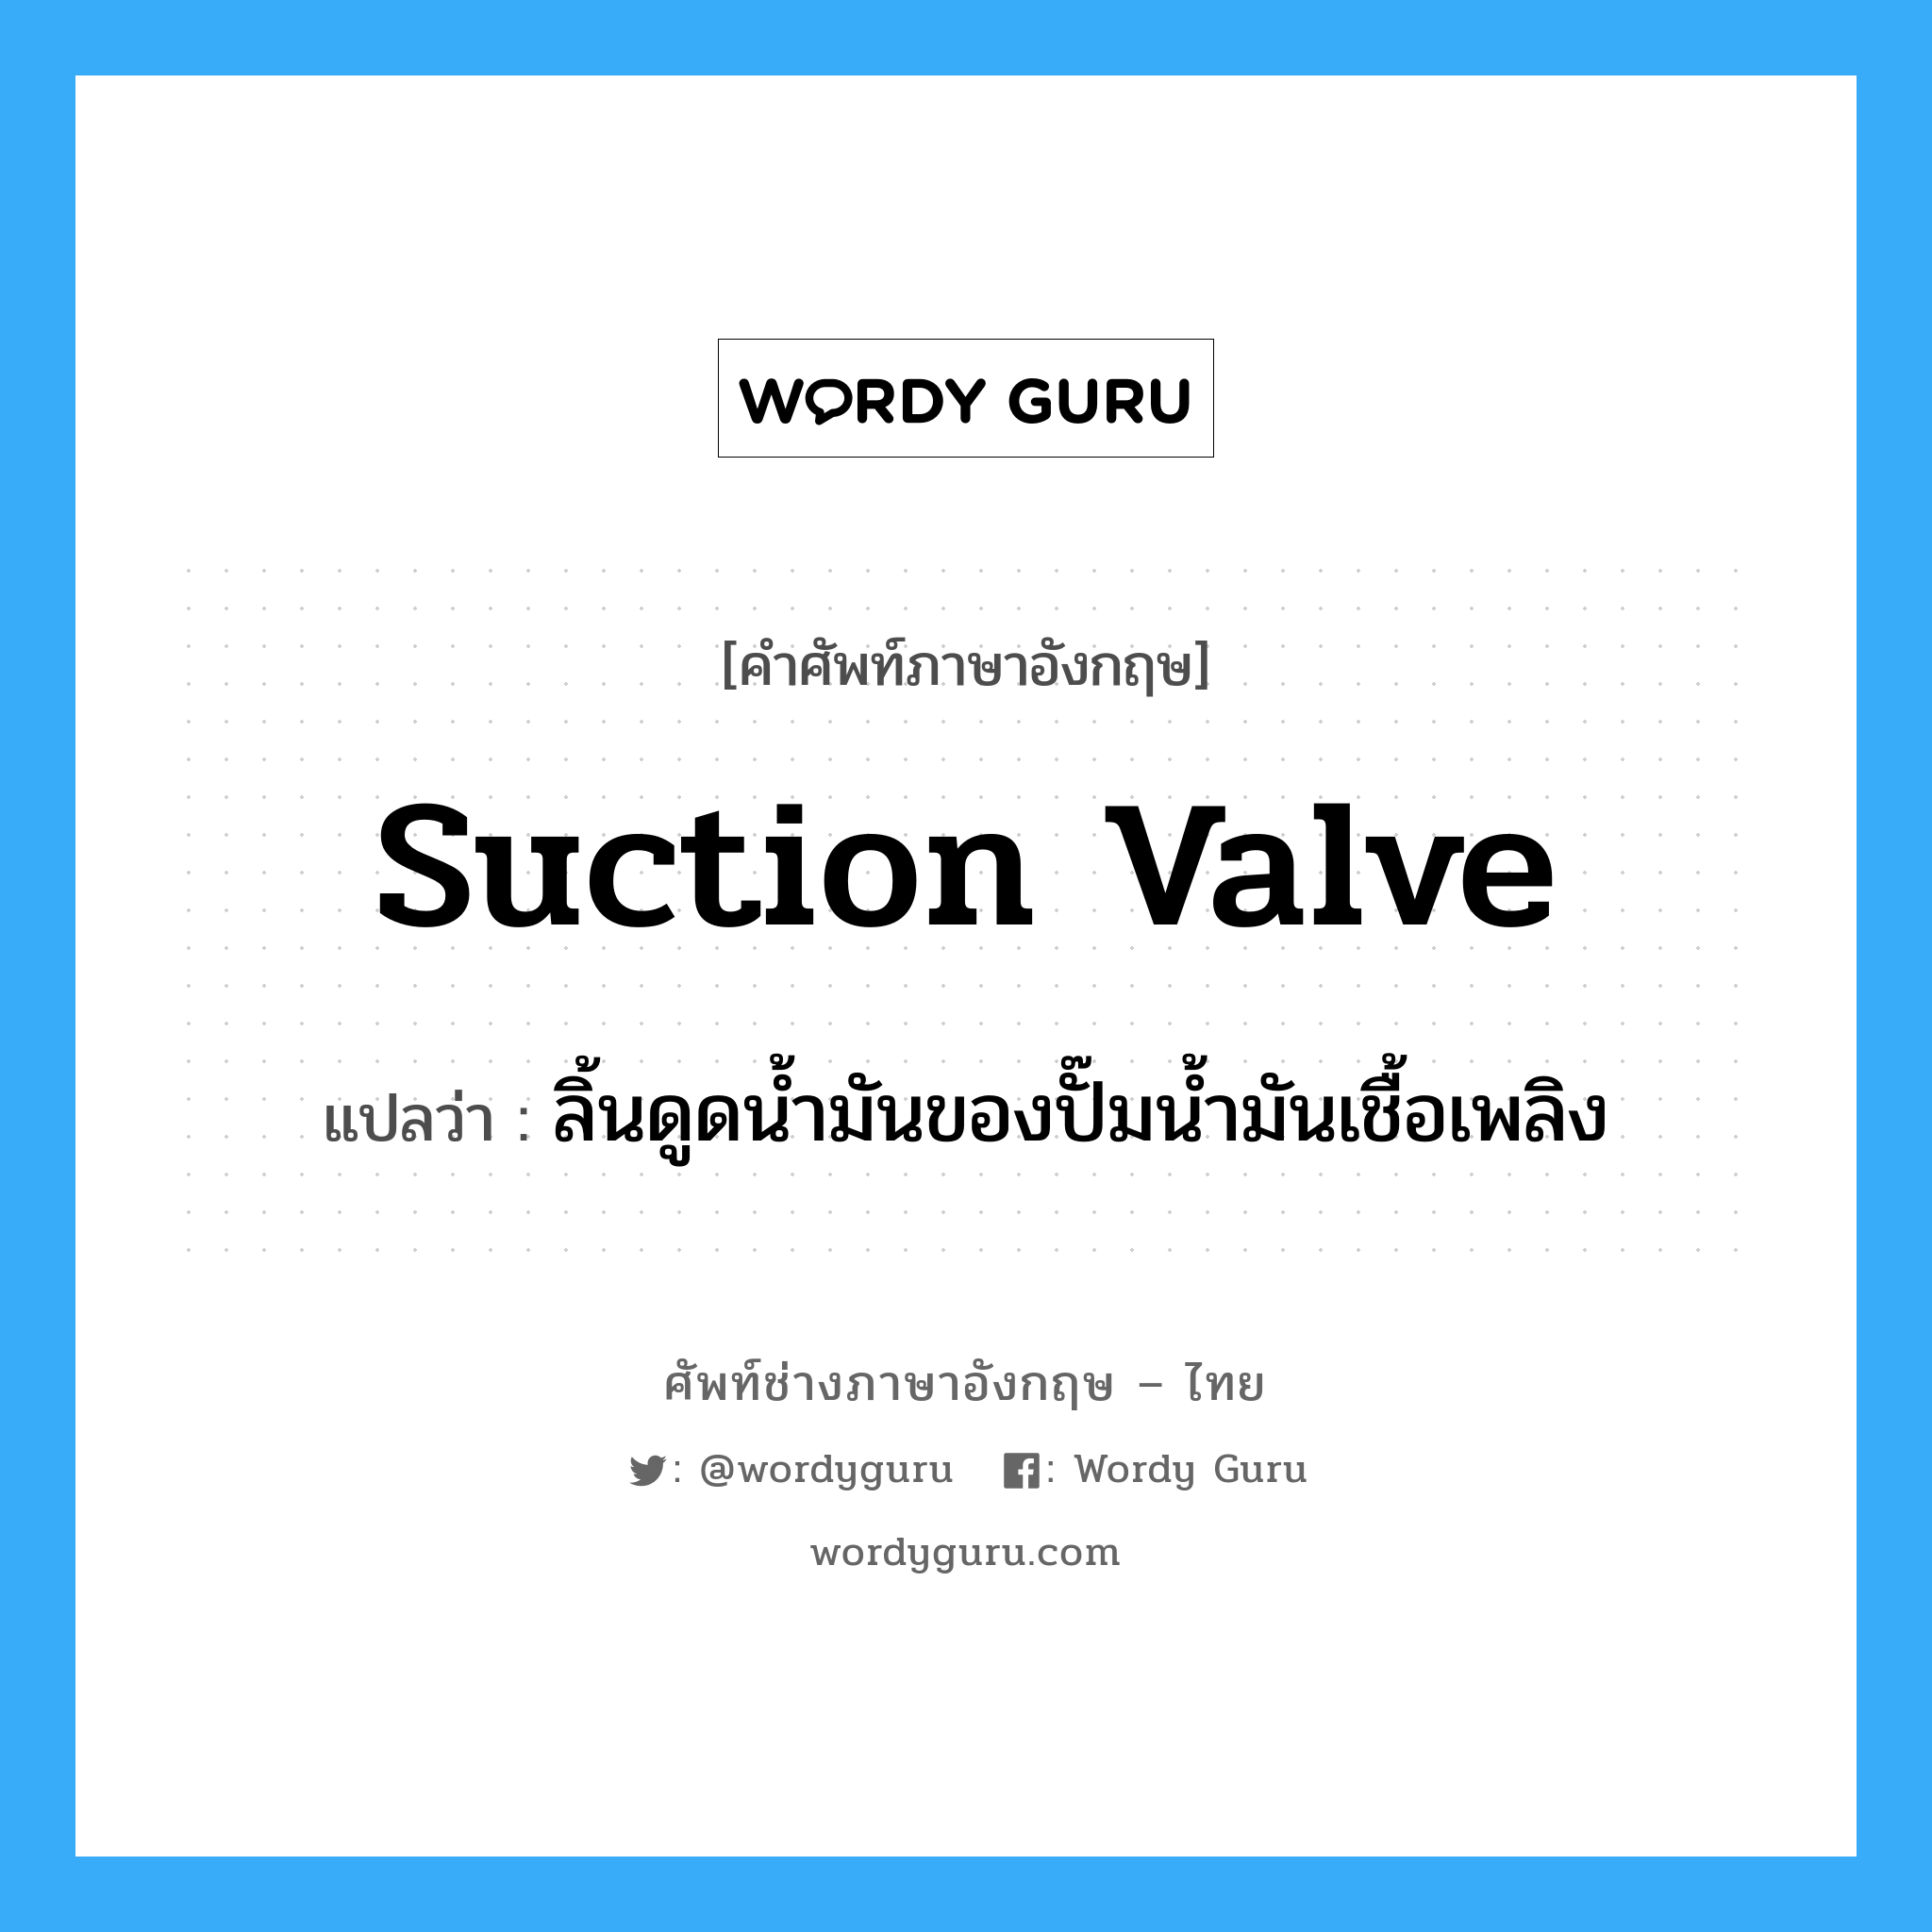 suction valve แปลว่า?, คำศัพท์ช่างภาษาอังกฤษ - ไทย suction valve คำศัพท์ภาษาอังกฤษ suction valve แปลว่า ลิ้นดูดน้ำมันของปั๊มน้ำมันเชื้อเพลิง